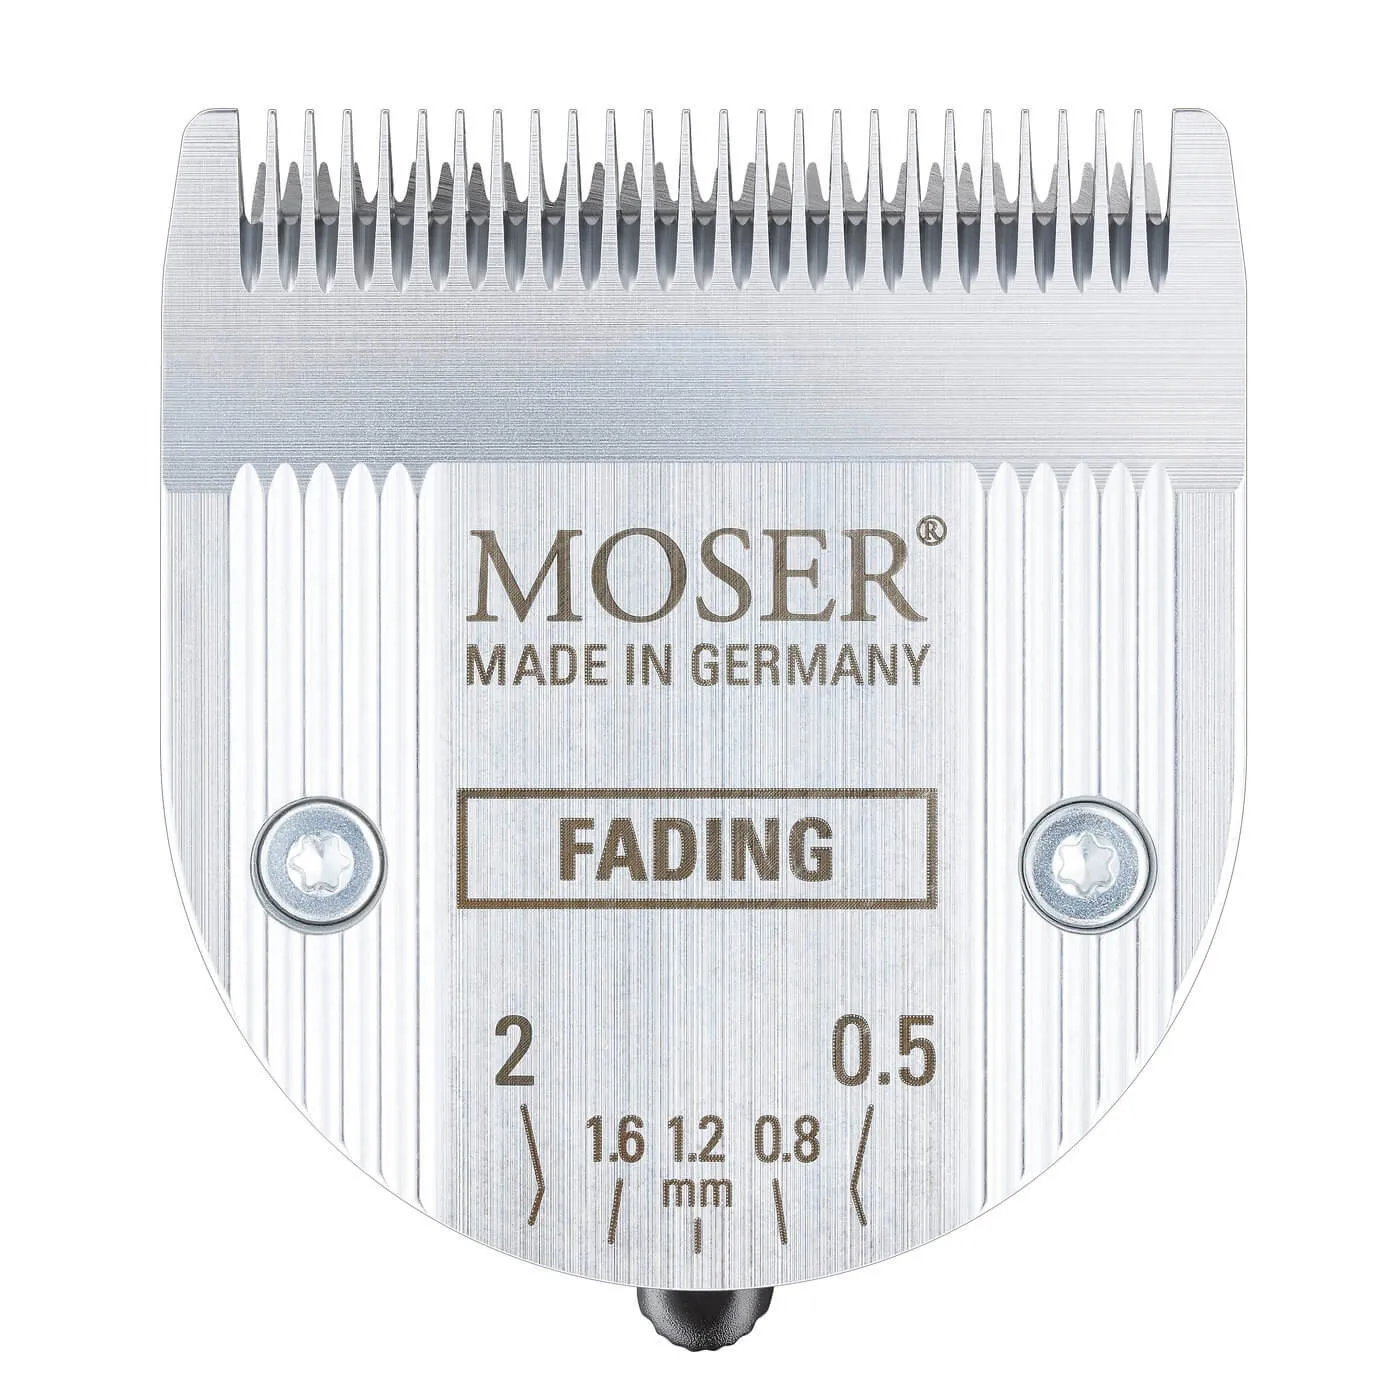 Машинка Moser Genio Pro Fading Edition 1874-0053 , для стрижки , аккумуляторная универсальная Made in Germany#2